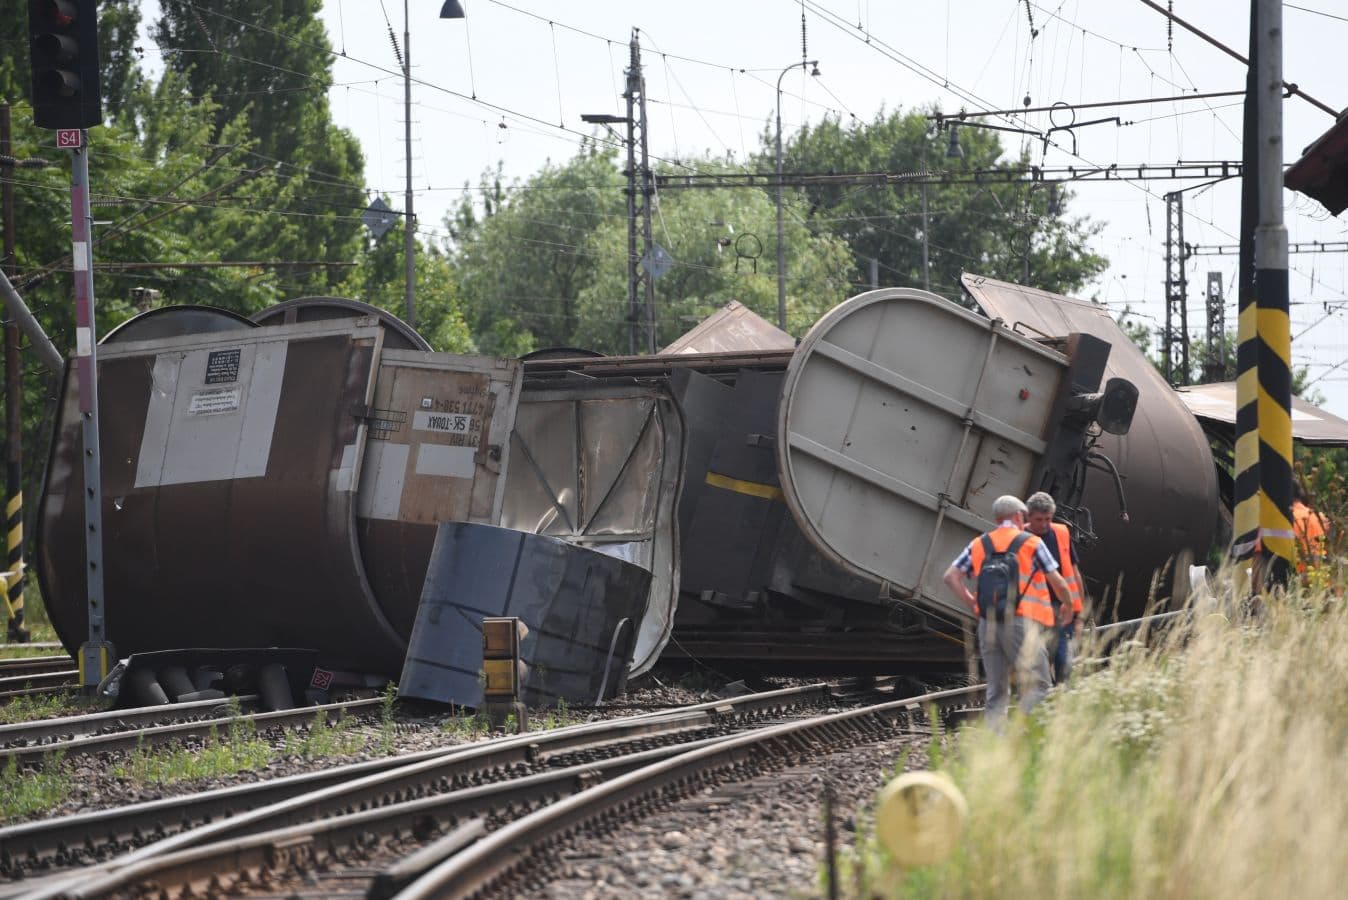 A kisiklott tehervonat miatt egy ideig még problémás lesz a vasúti közlekedés Vágsellyénél